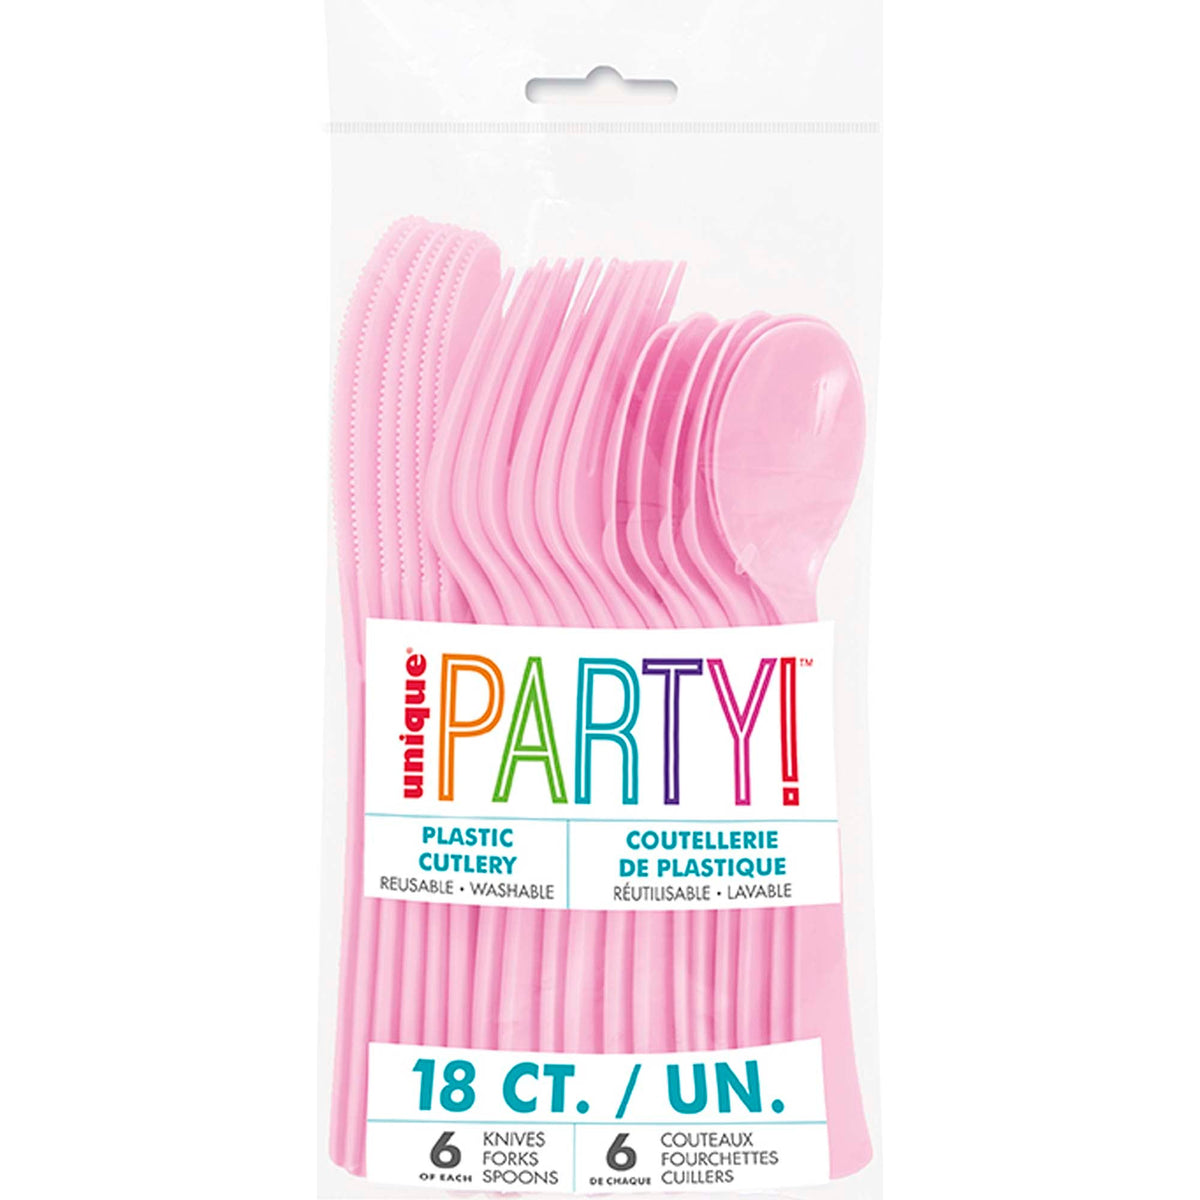 UNIQUE PARTY FAVORS Disposable-Plasticware Pink Plastic Cutlery Set, 18 Count 011179395170